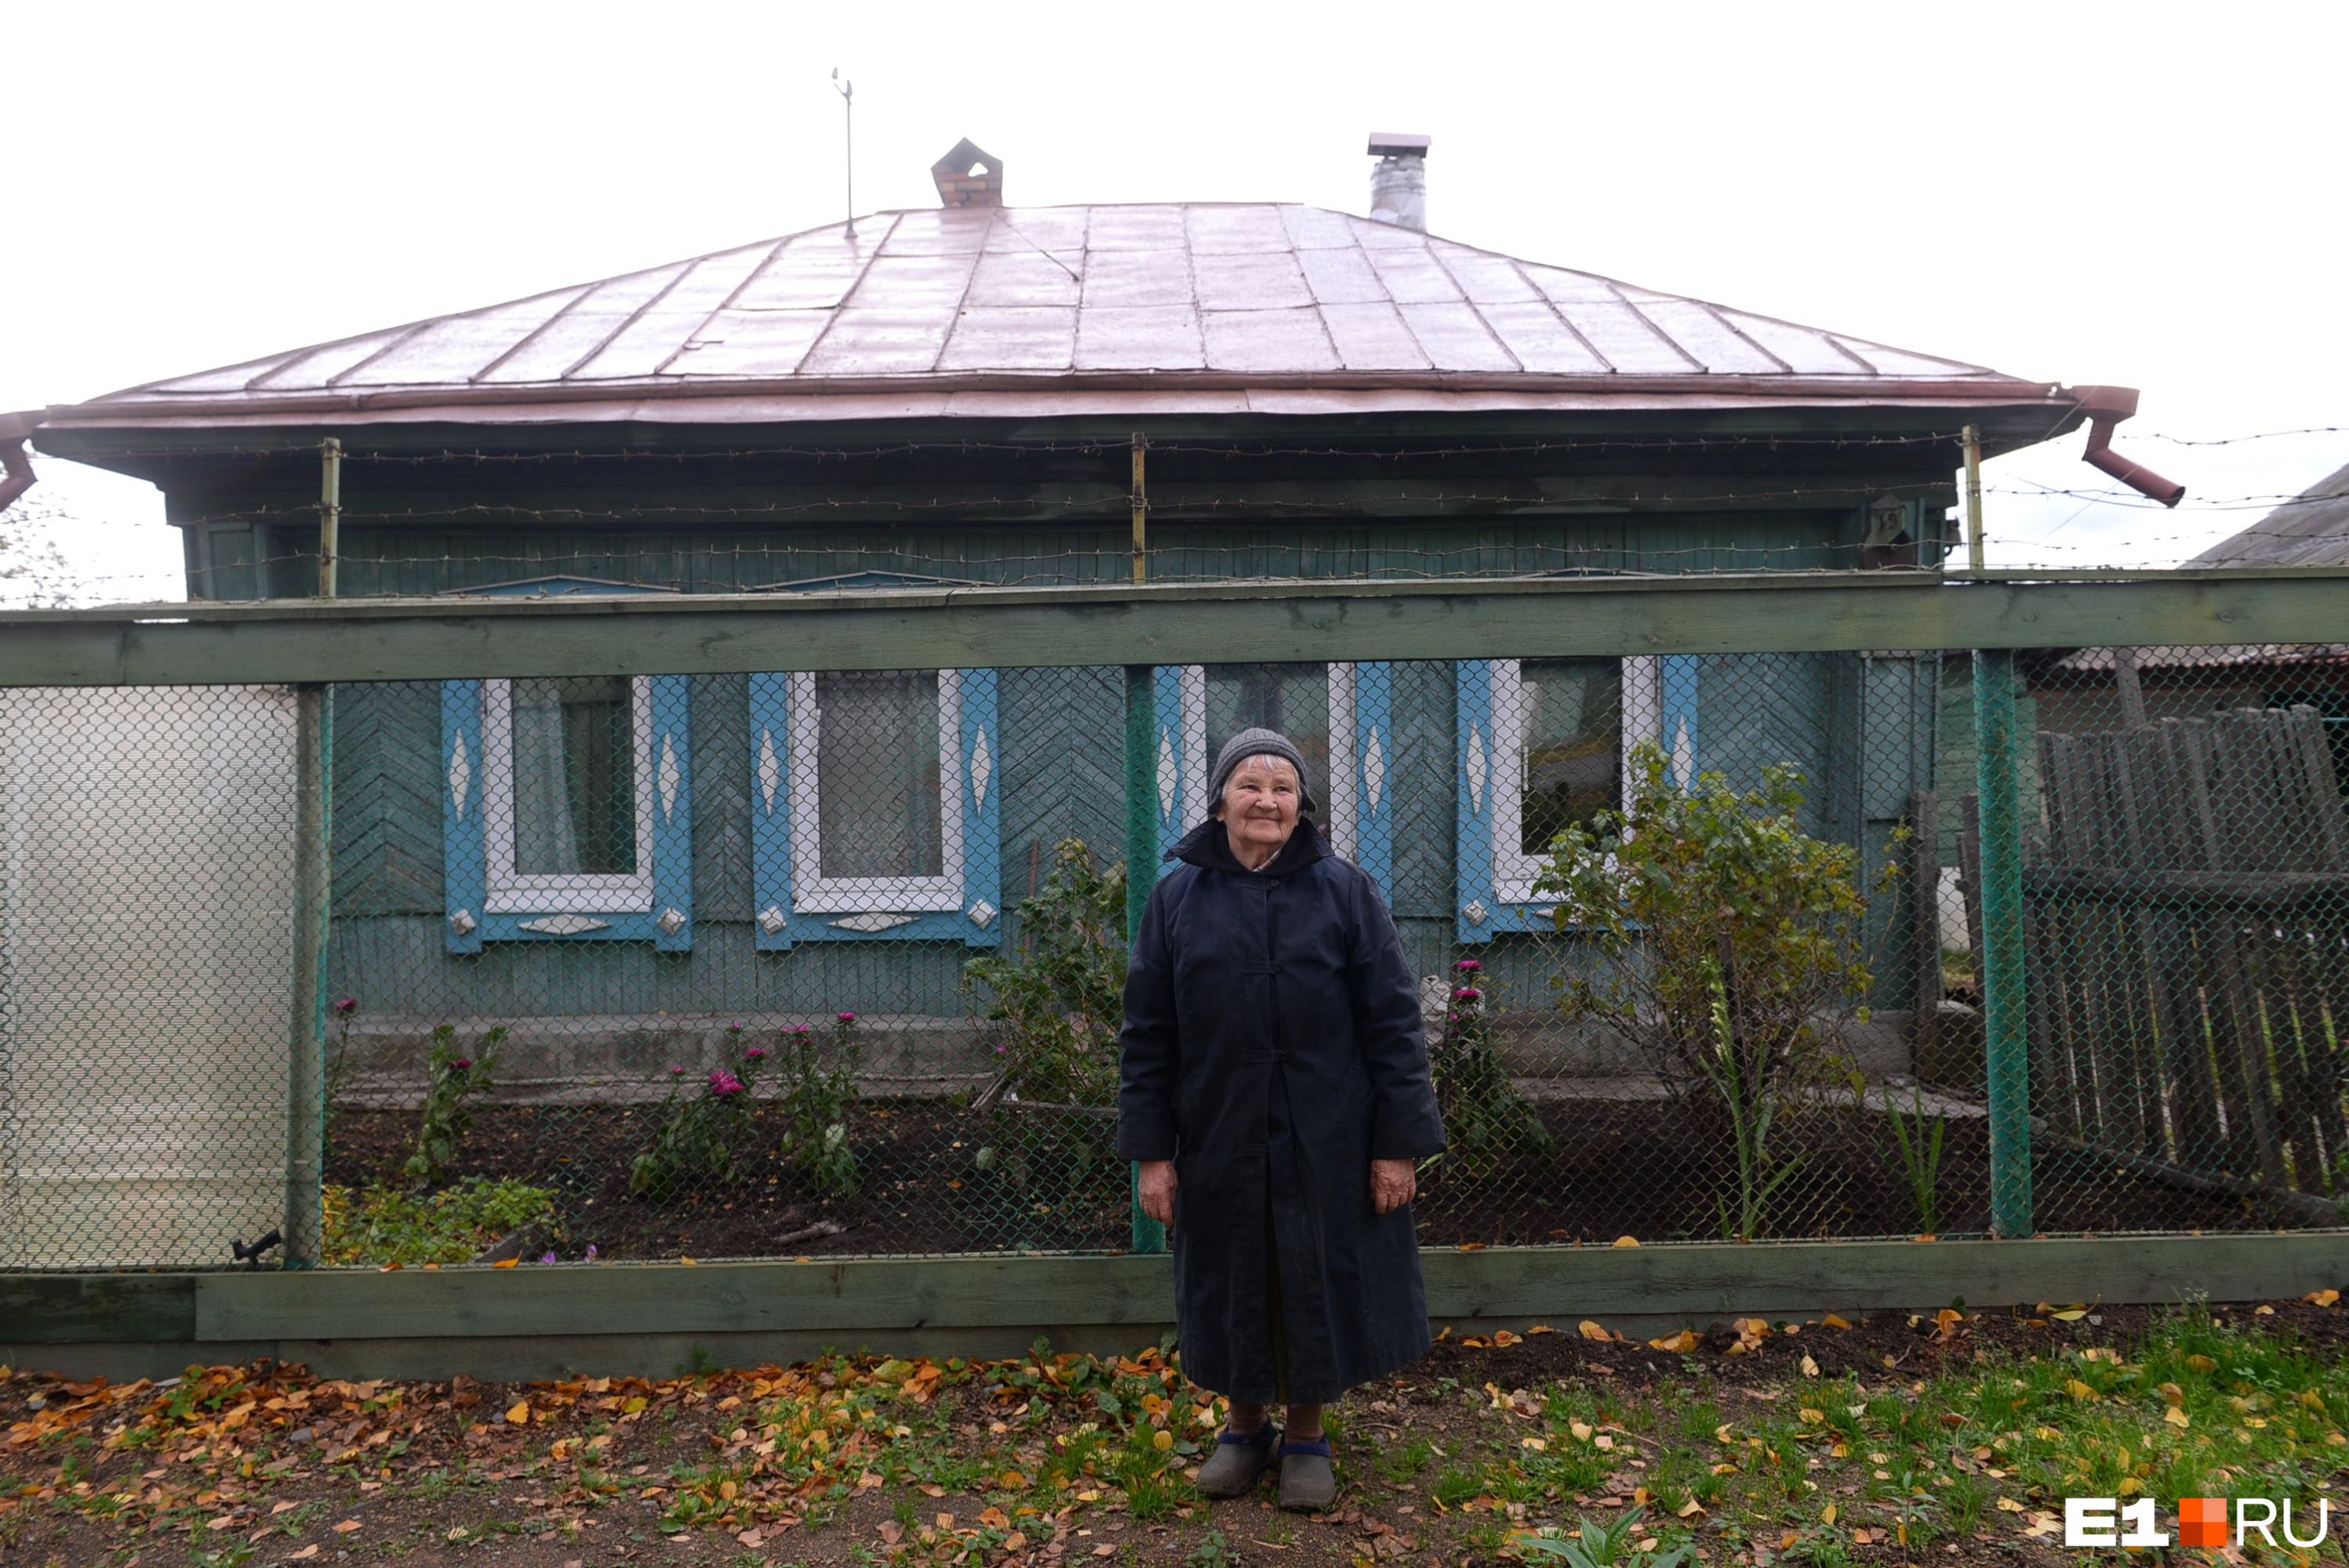 Маргарита Александровна все еще сама работает в саду. Когда мы ее застали, она пересаживала смородину